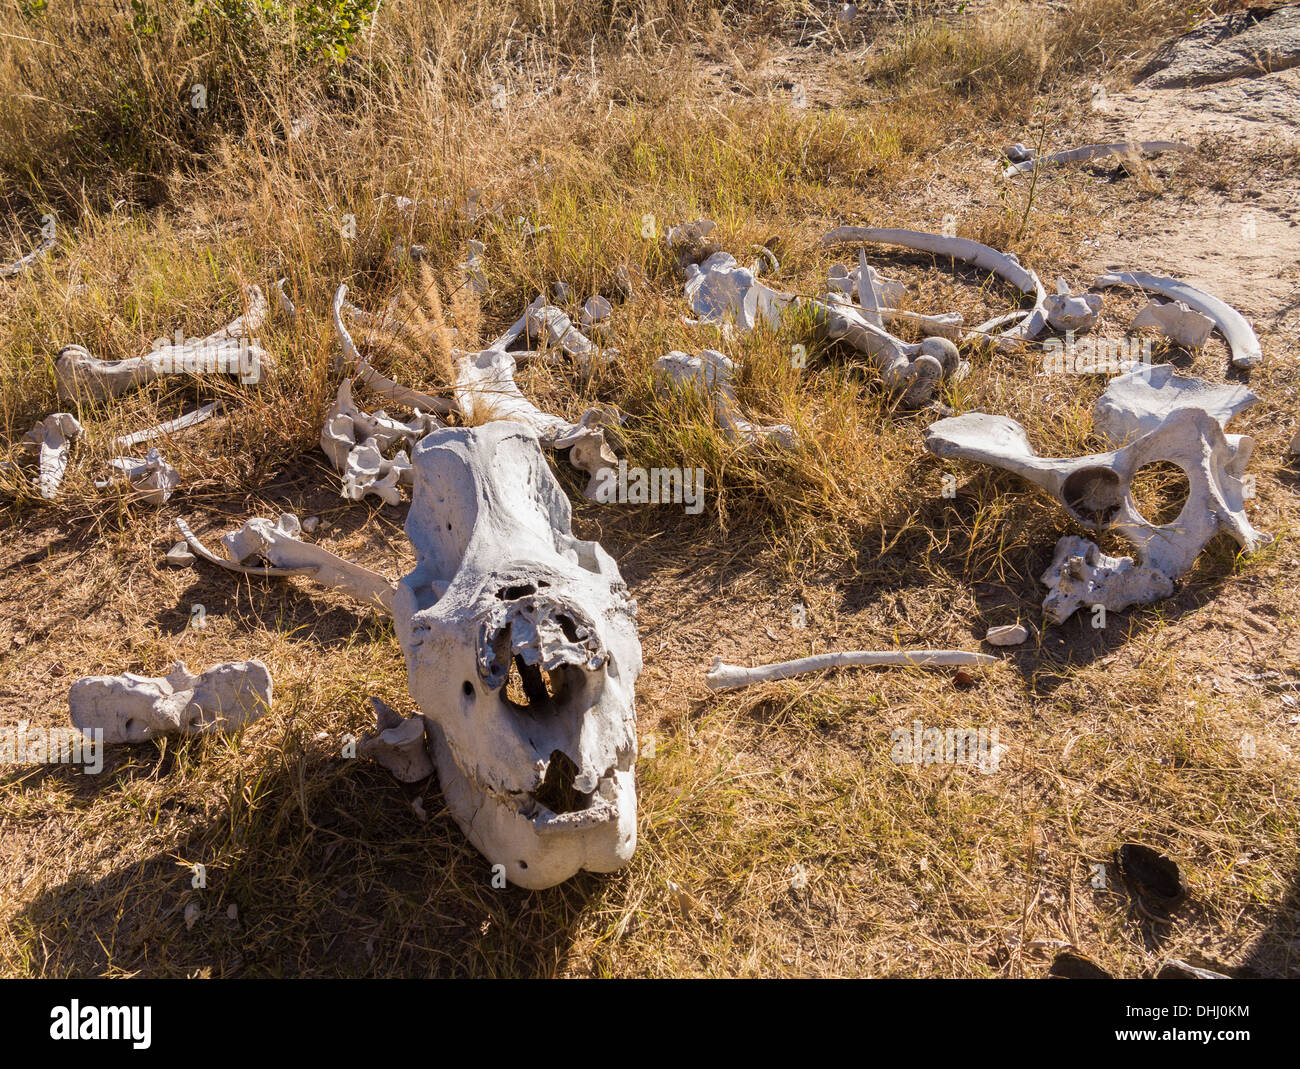 Crâne et os d'un probable rhino tué pour sa corne dans le braconnage dans la région de Matobo National Park, Zimbabwe, Africa Banque D'Images